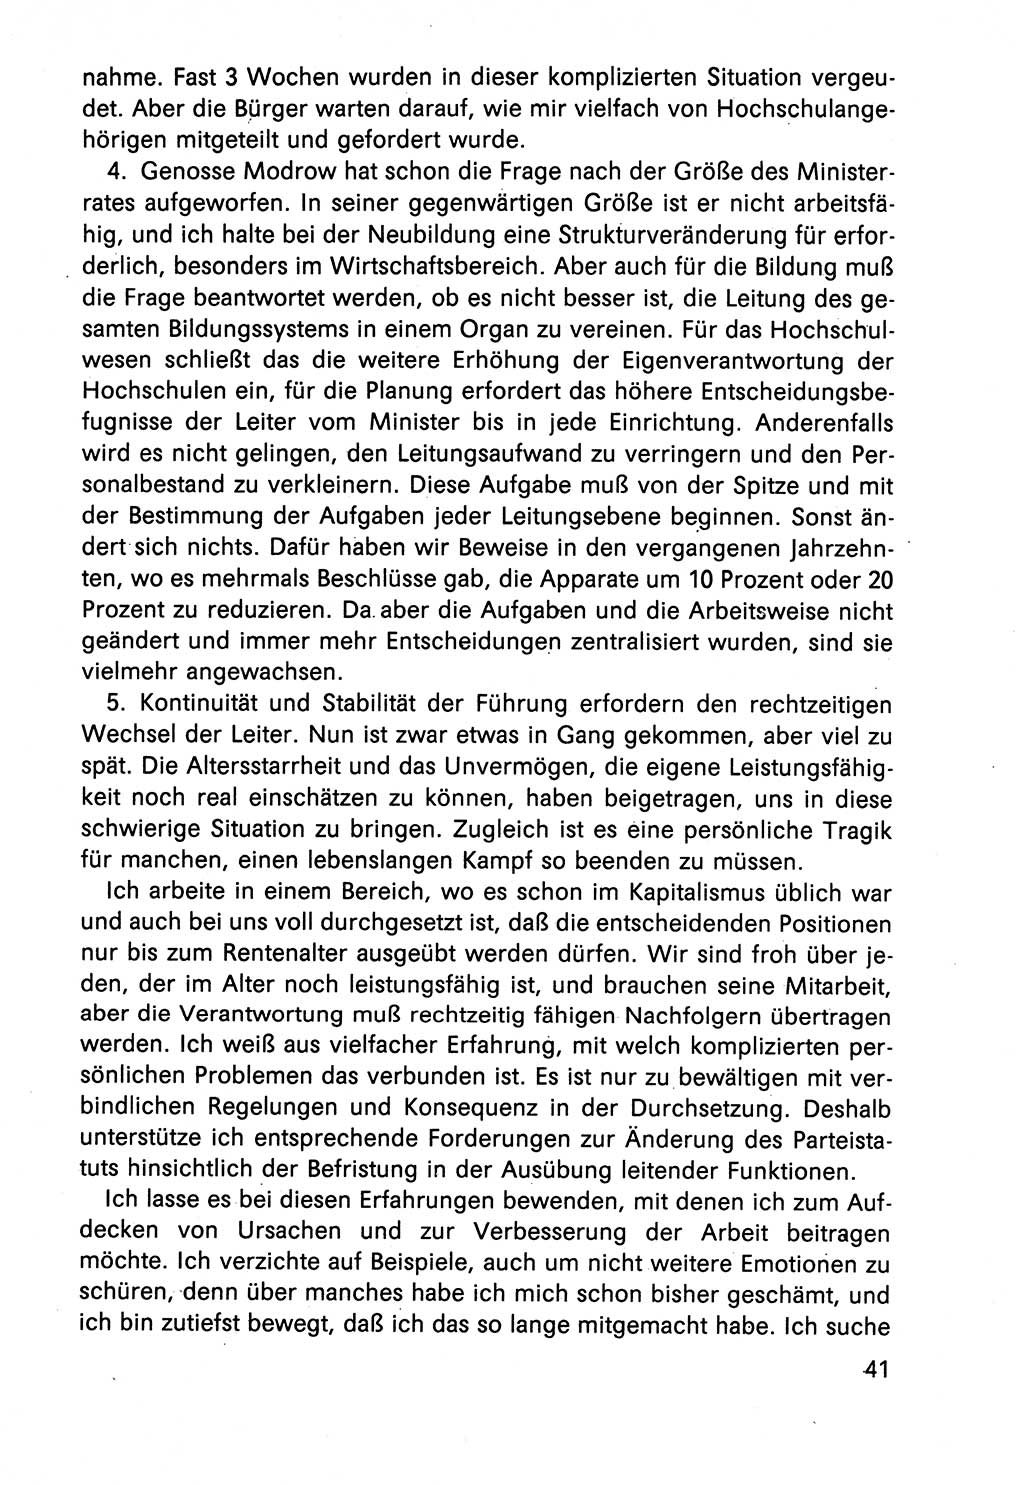 Diskussionsbeiträge, 10. Tagung des ZK (Zentralkomitee) der SED (Sozialistische Einheitspartei Deutschlands) [Deutsche Demokratische Republik (DDR)] 1989, Seite 41 (Disk.-Beitr. 10. Tg. ZK SED DDR 1989, S. 41)